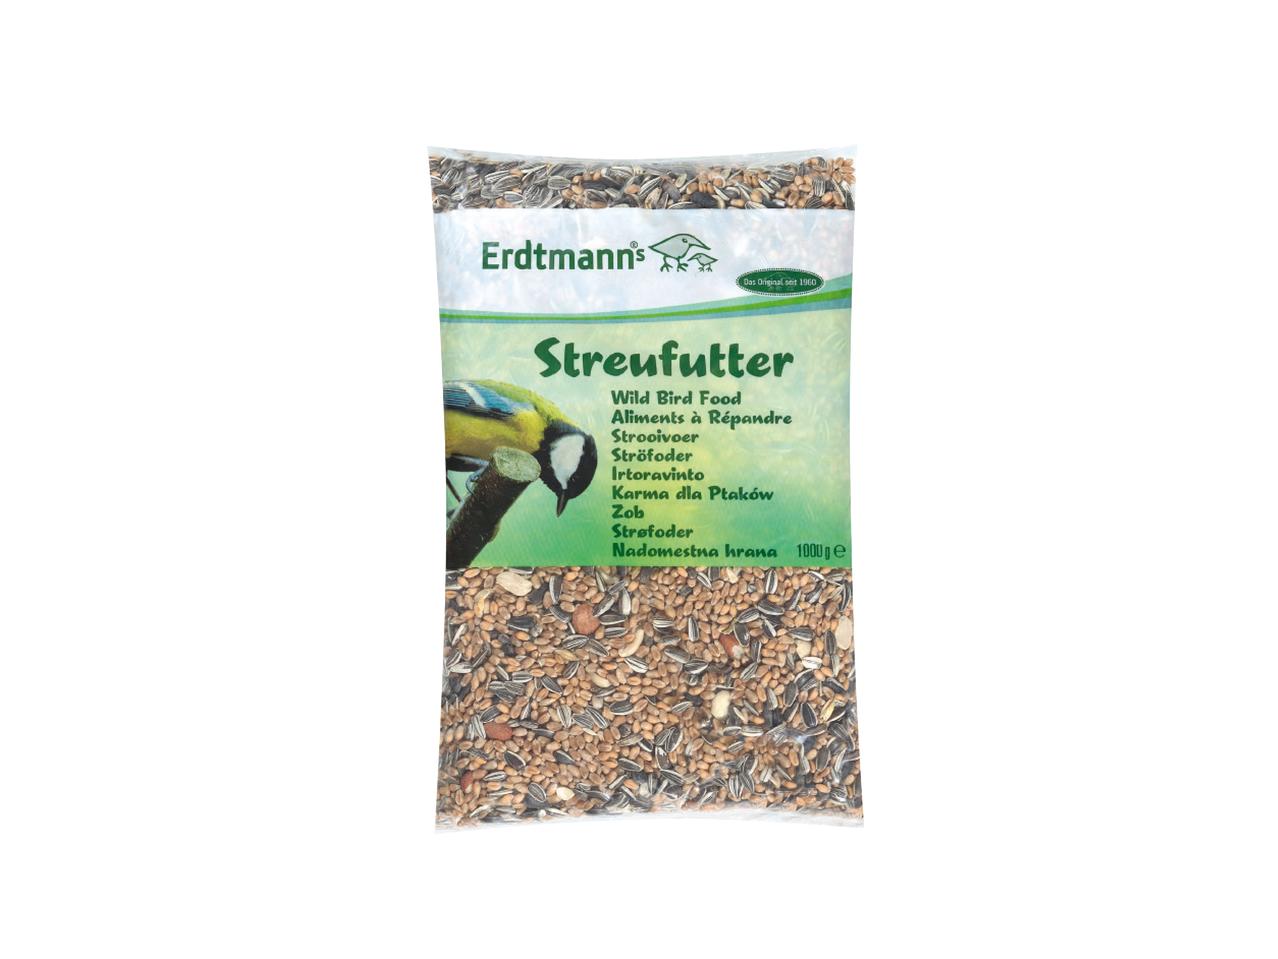 ERDTMANN(R) Wild Bird Seed (Streufutter)